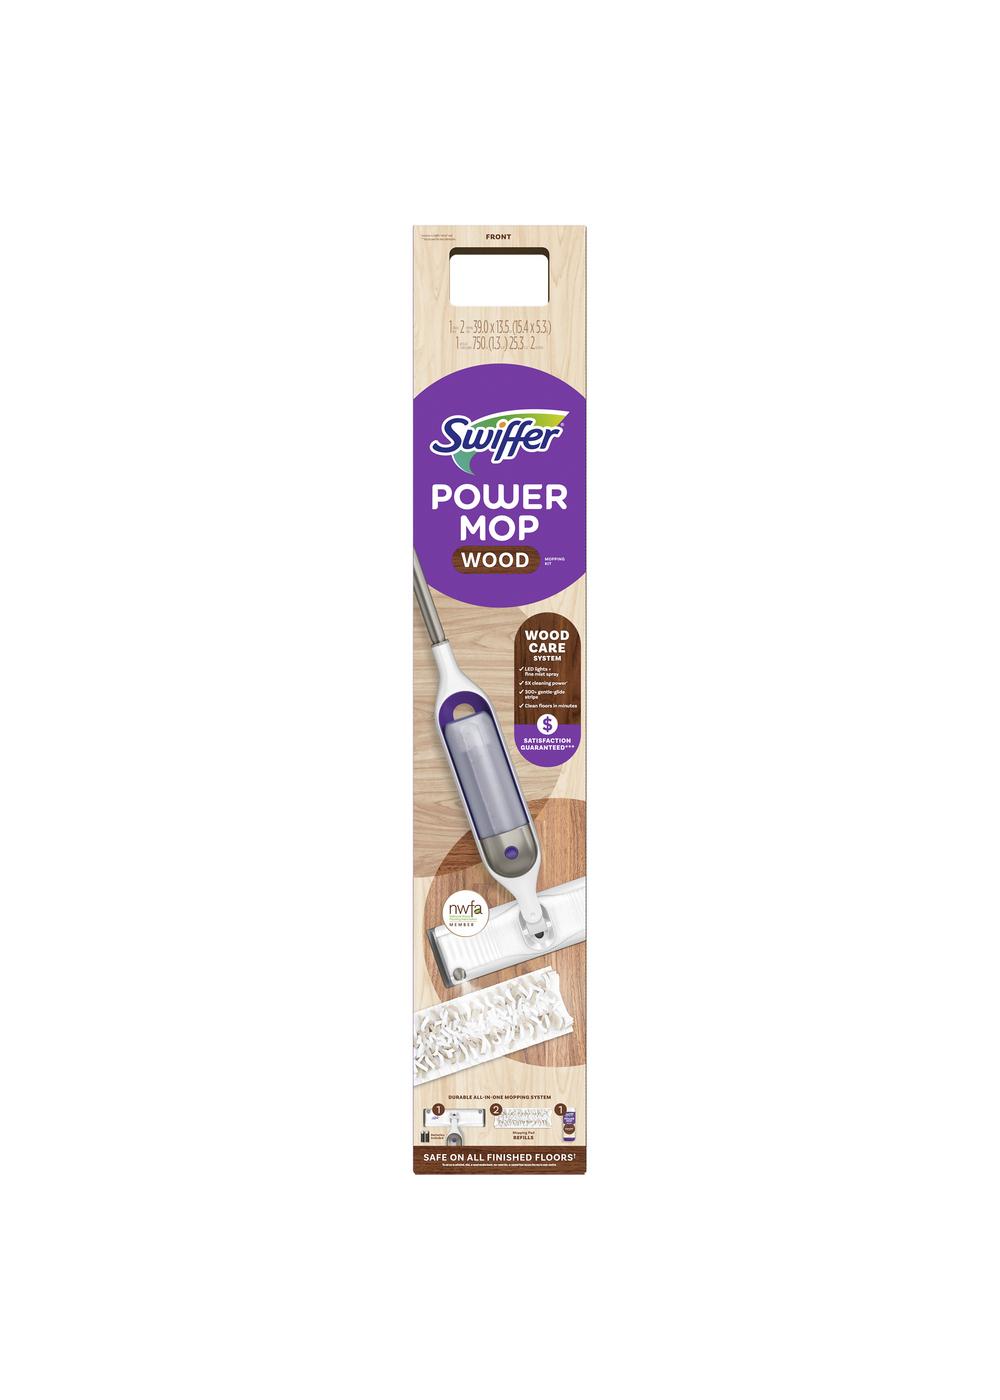 SWOPT Premium Cotton Mop 60 Eva Foam Comfort Grip Wooden Handle Co